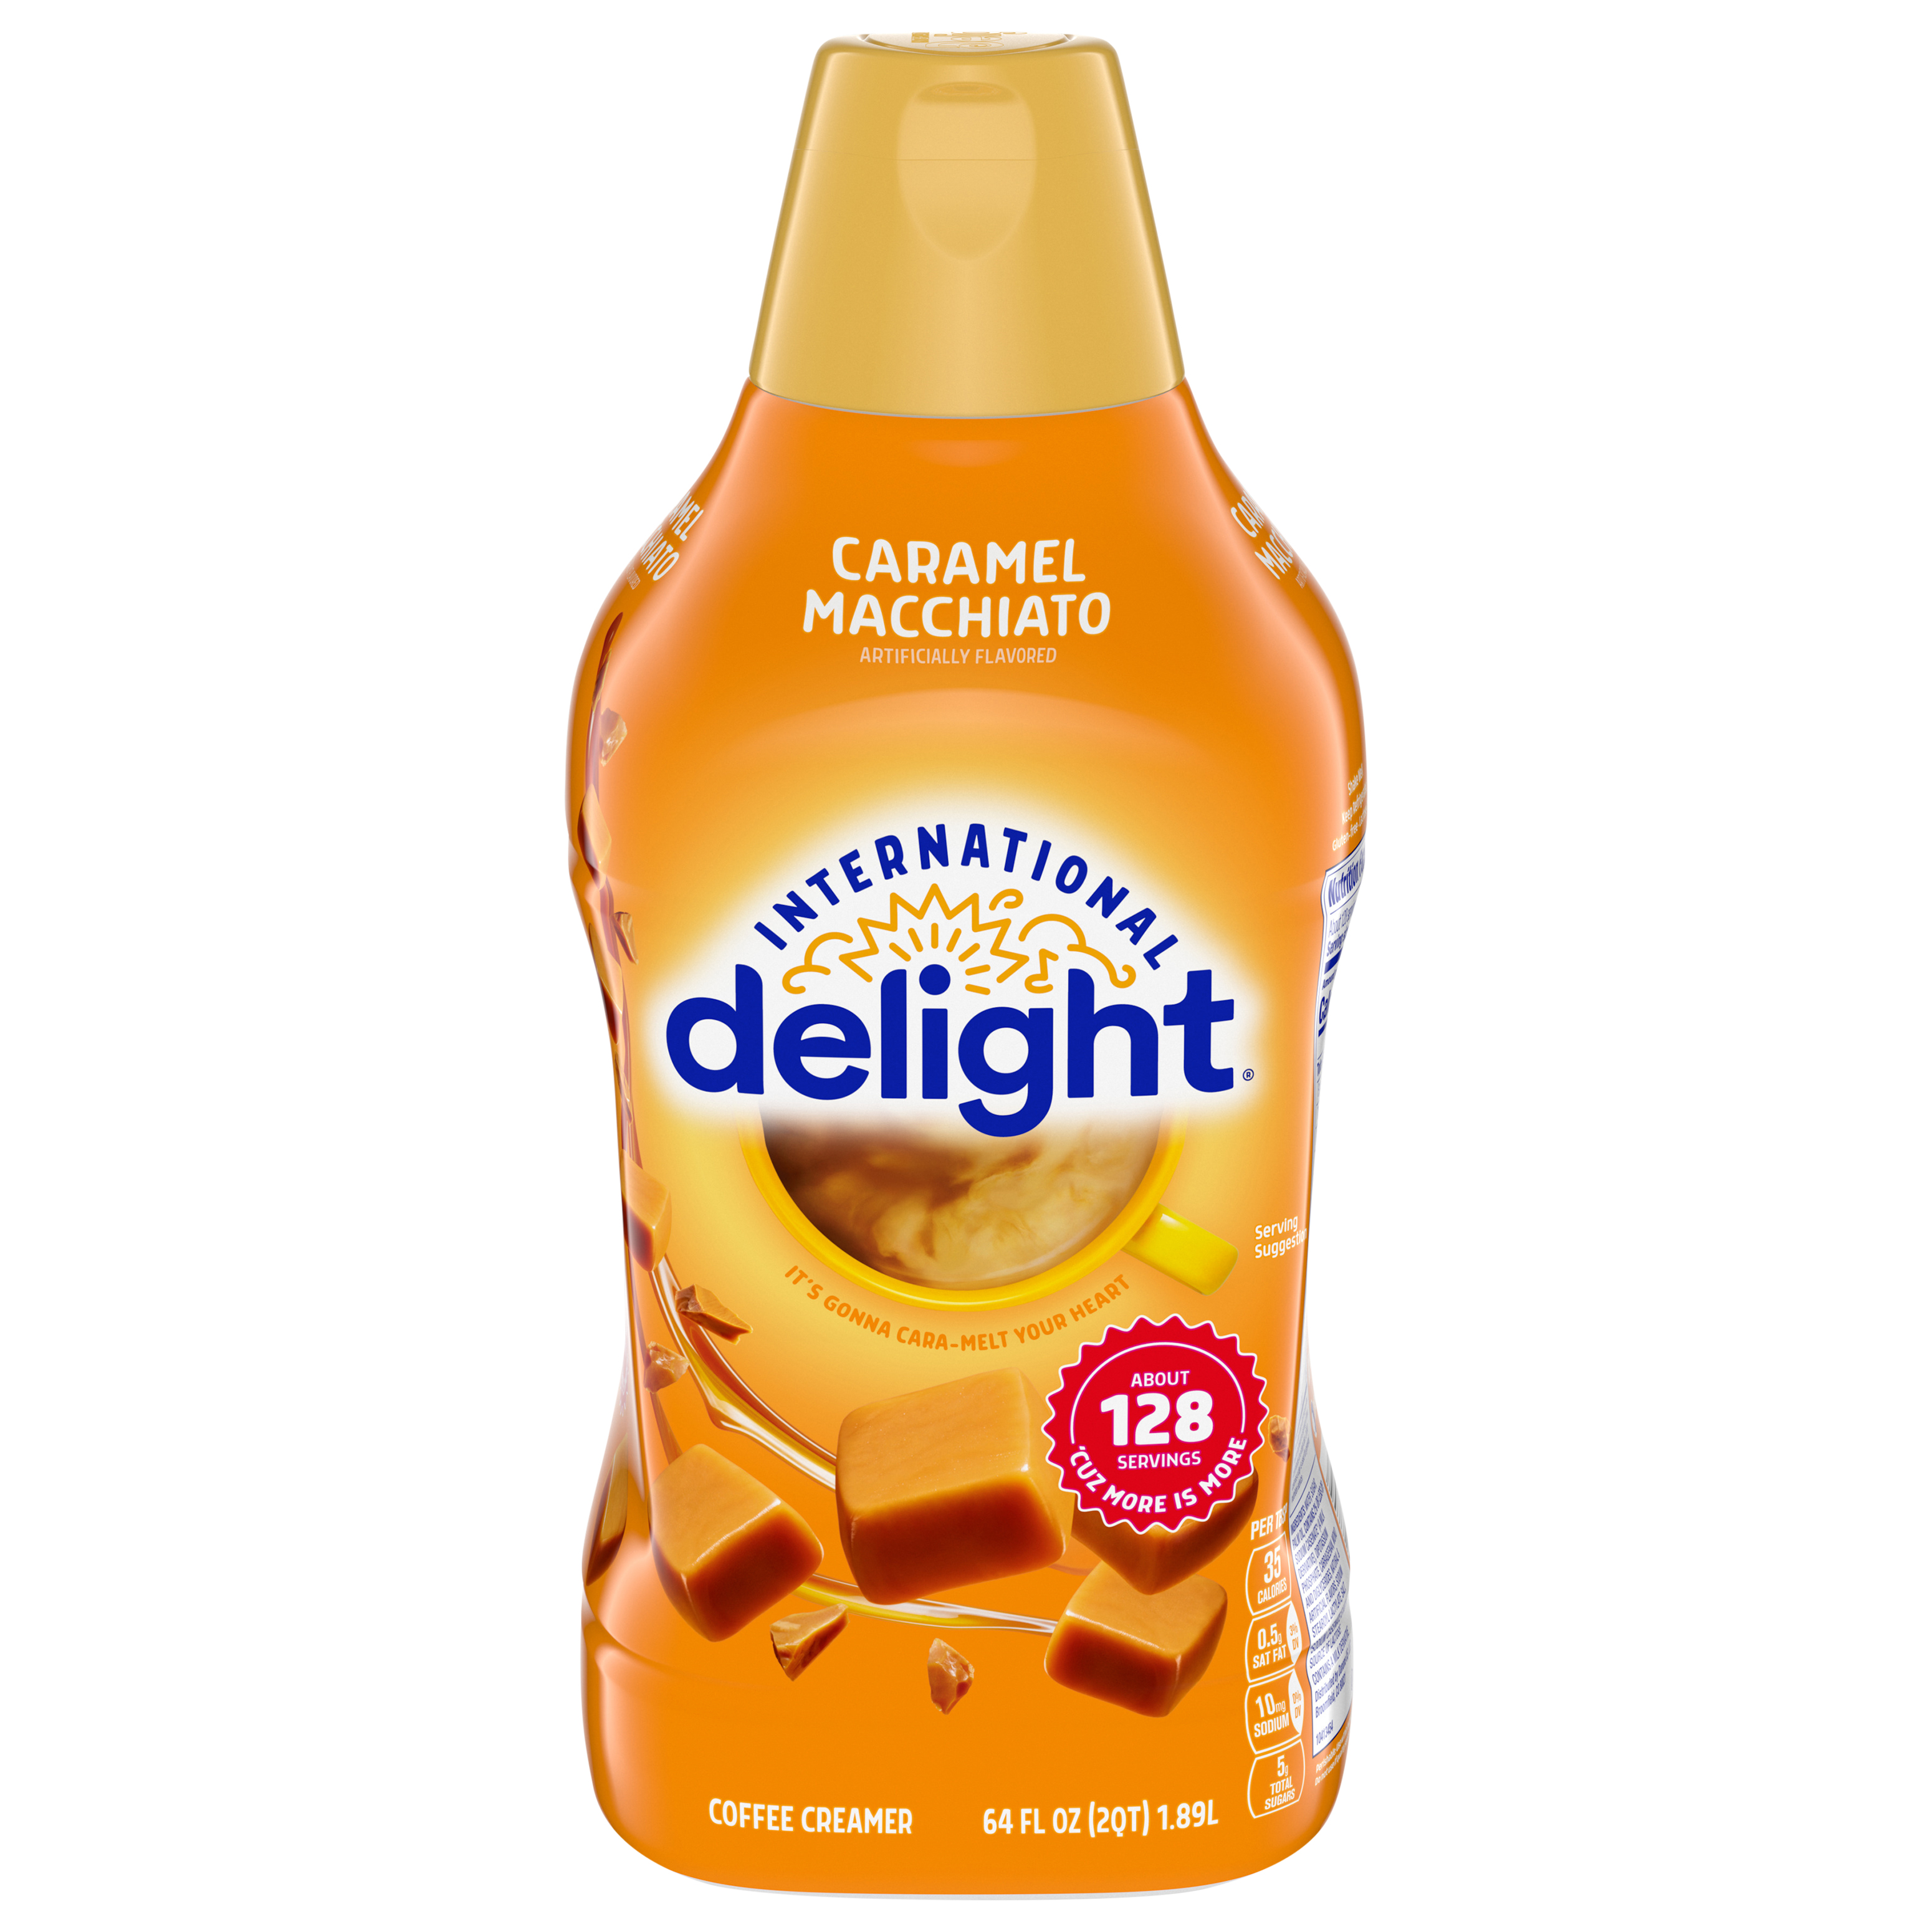 International Delight Coffee Creamer, Caramel Macchiato 6 units per case 64.0 fl